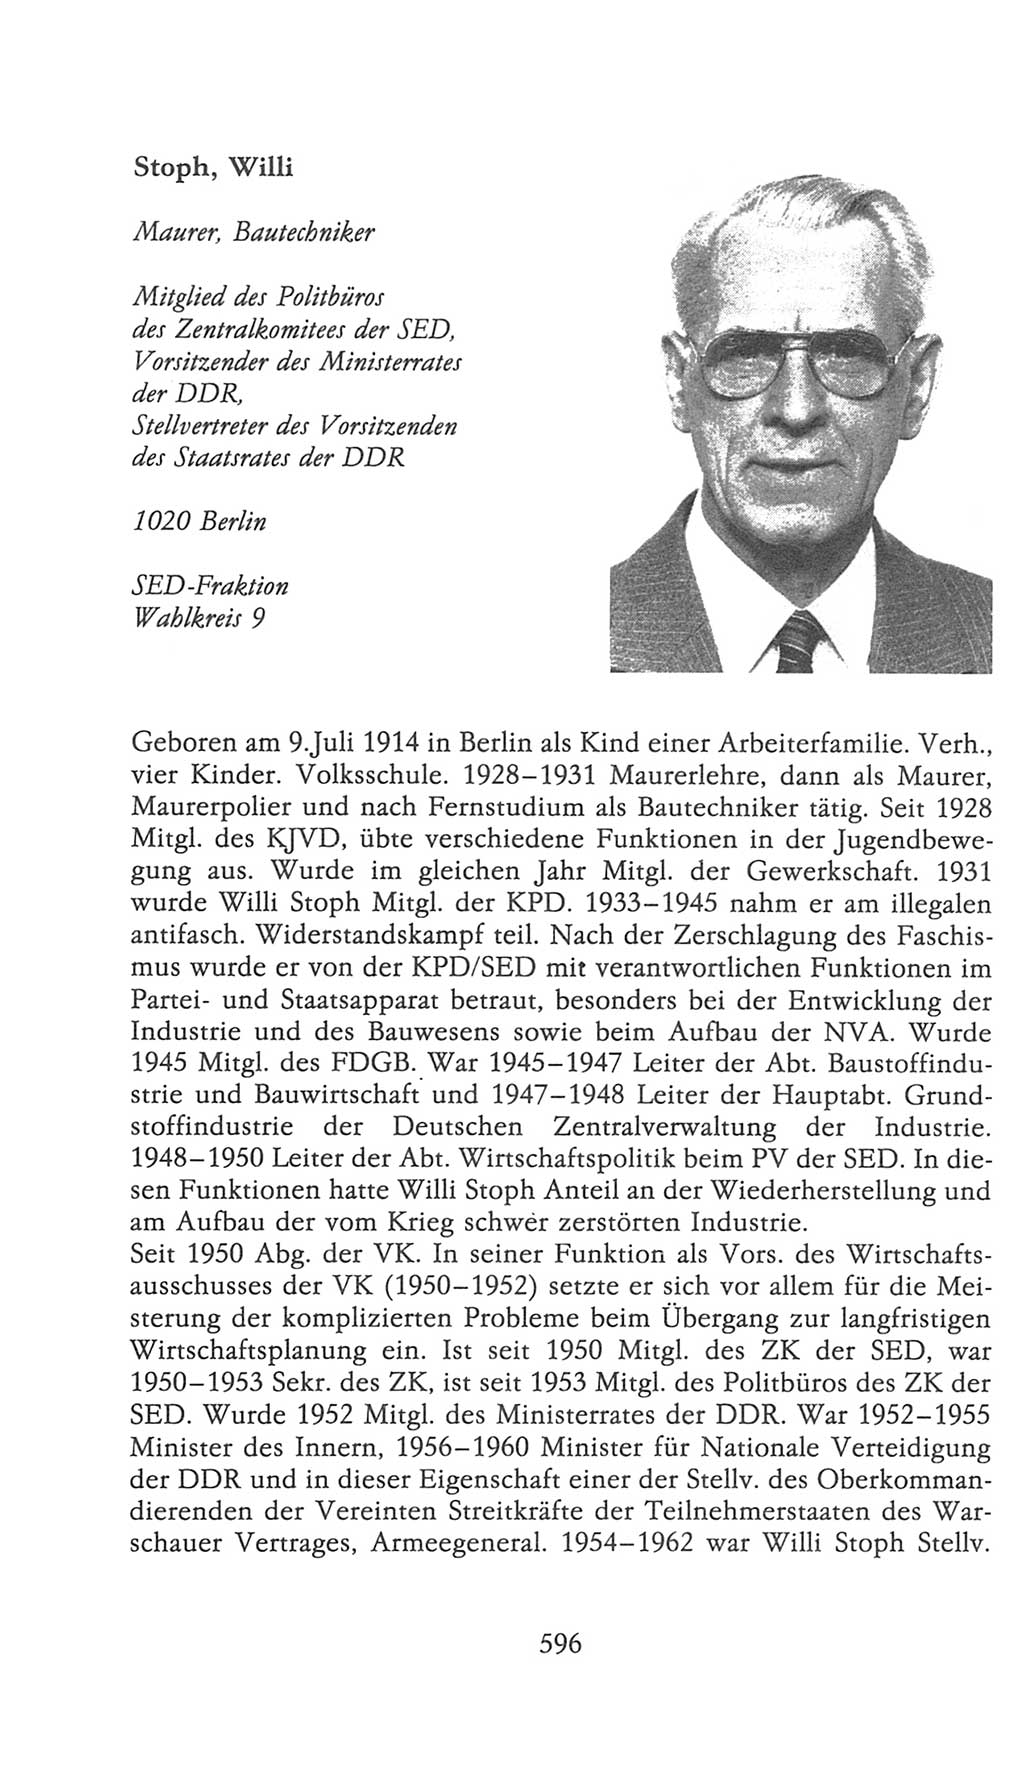 Volkskammer (VK) der Deutschen Demokratischen Republik (DDR), 9. Wahlperiode 1986-1990, Seite 596 (VK. DDR 9. WP. 1986-1990, S. 596)